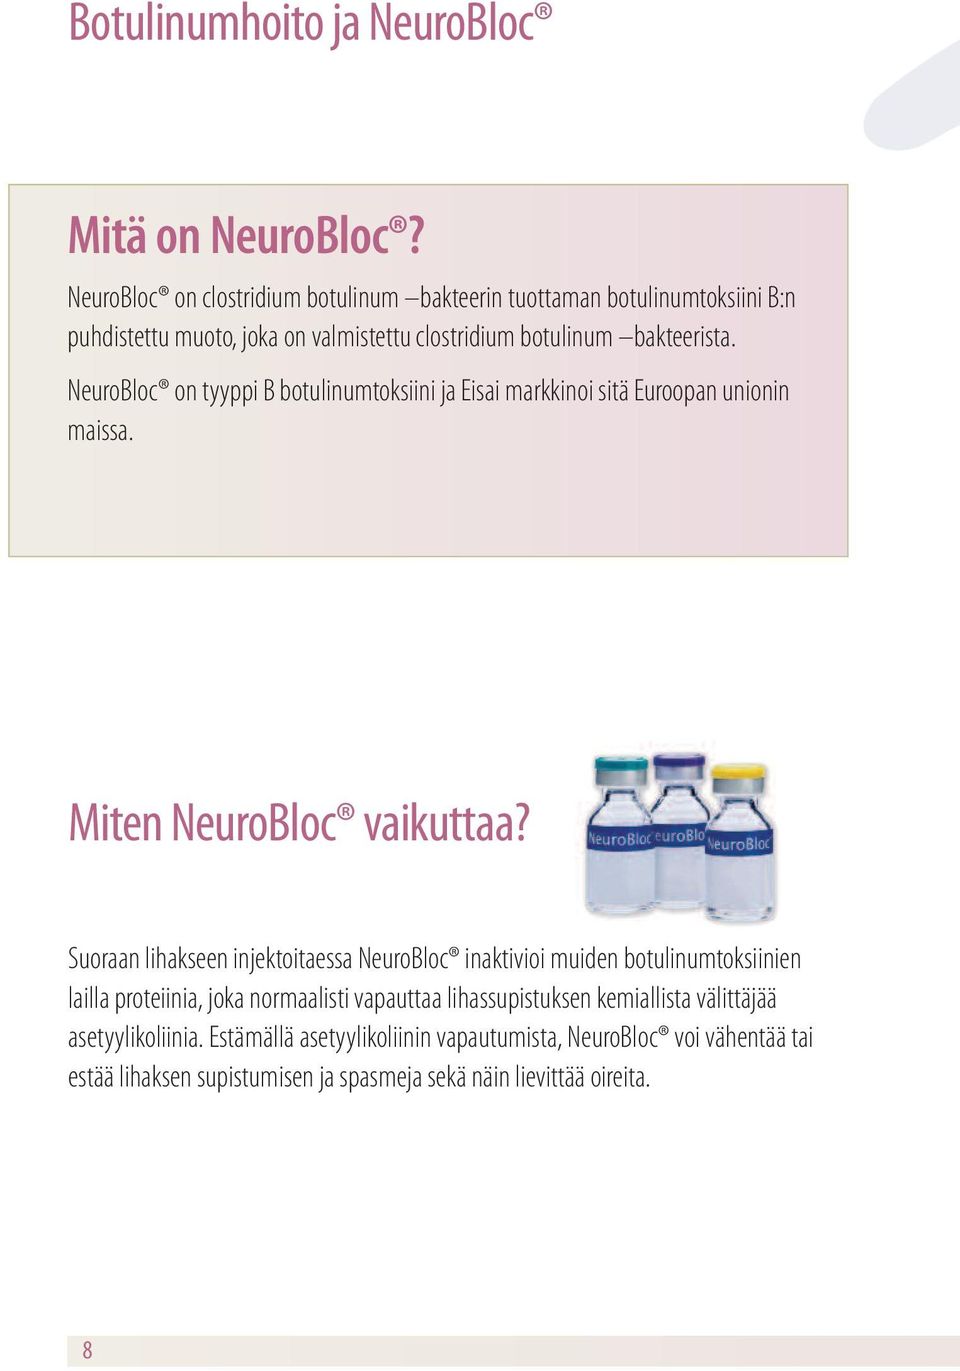 NeuroBloc on tyyppi B botulinumtoksiini ja Eisai markkinoi sitä Euroopan unionin maissa. Miten NeuroBloc vaikuttaa?